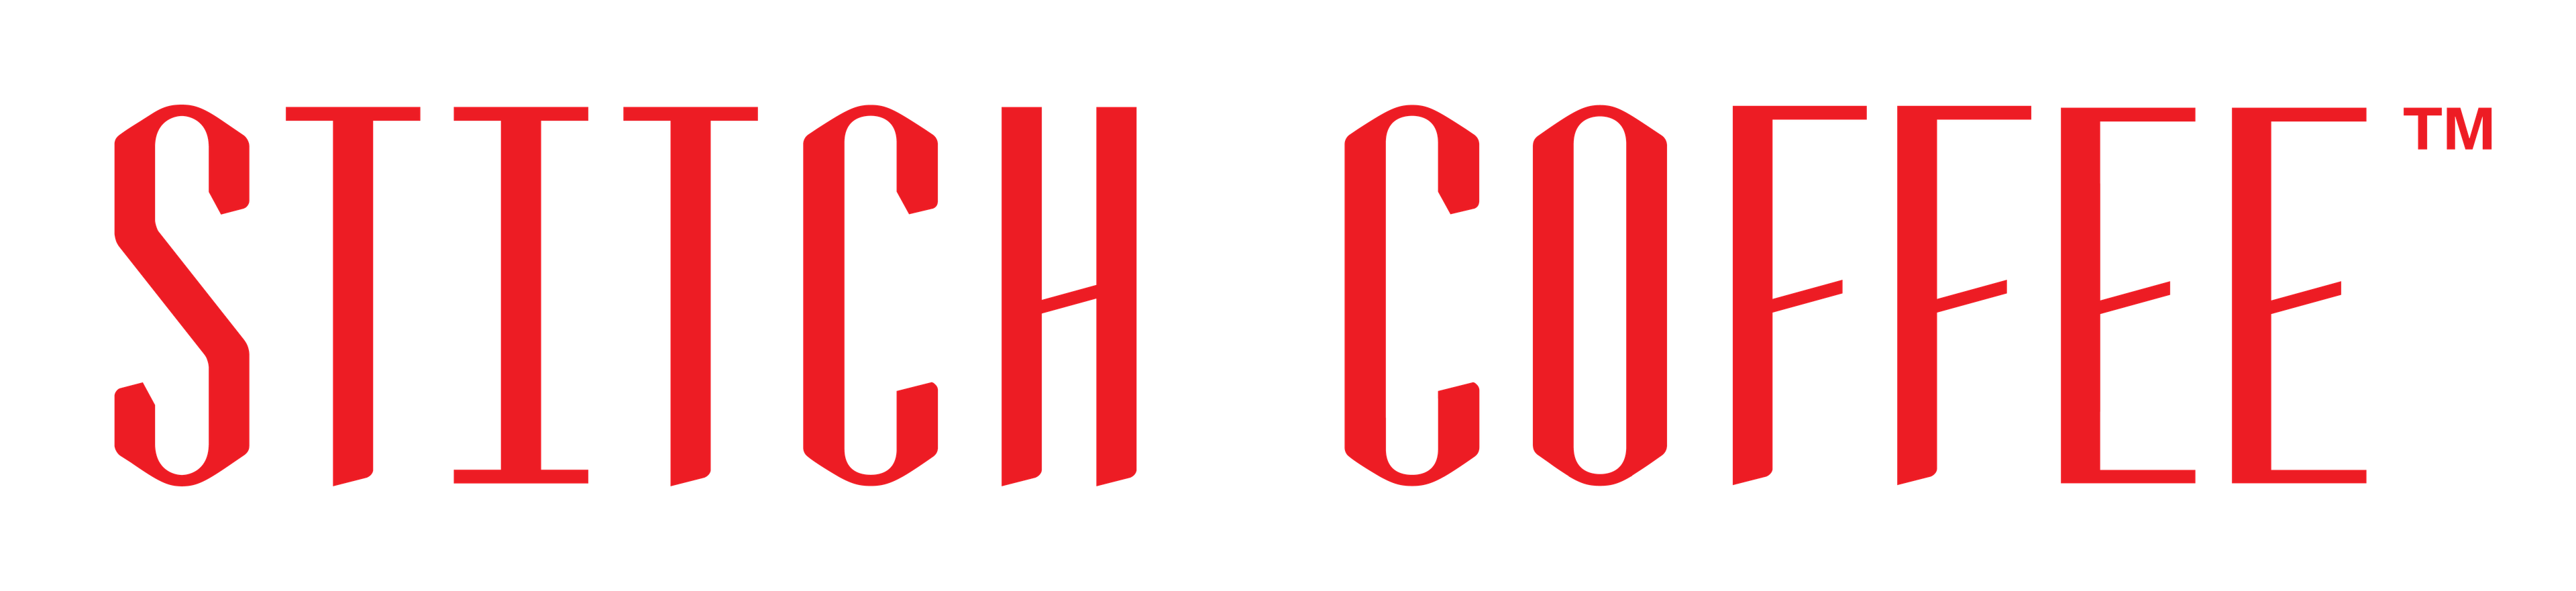 Stitch Coffee Logo